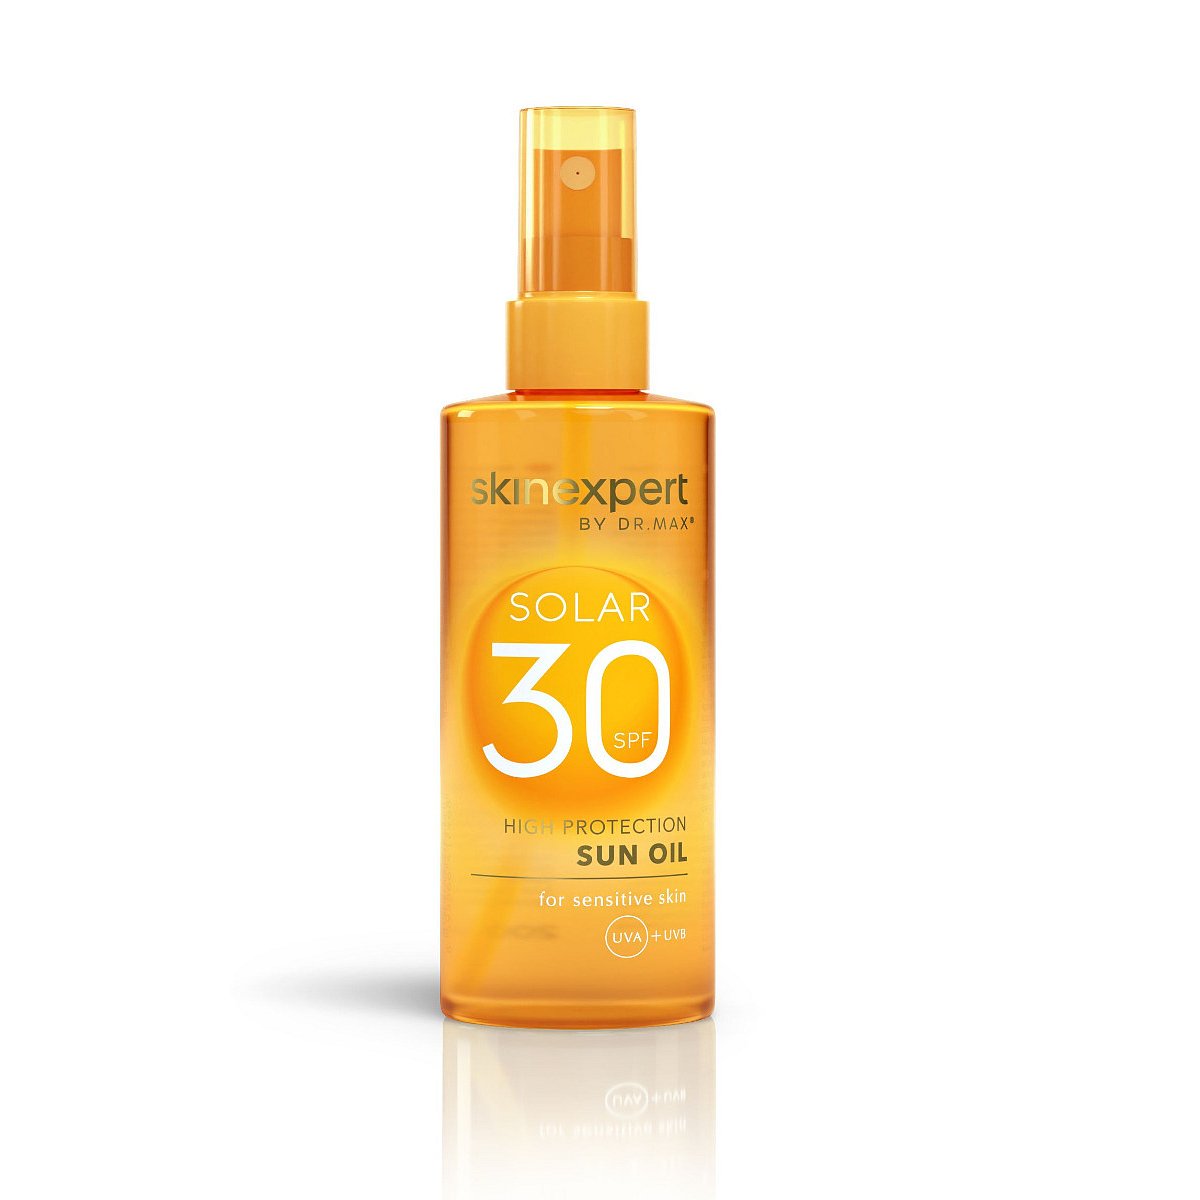 skinexpert BY DR.MAX SOLAR Sun Oil SPF30 200 ml